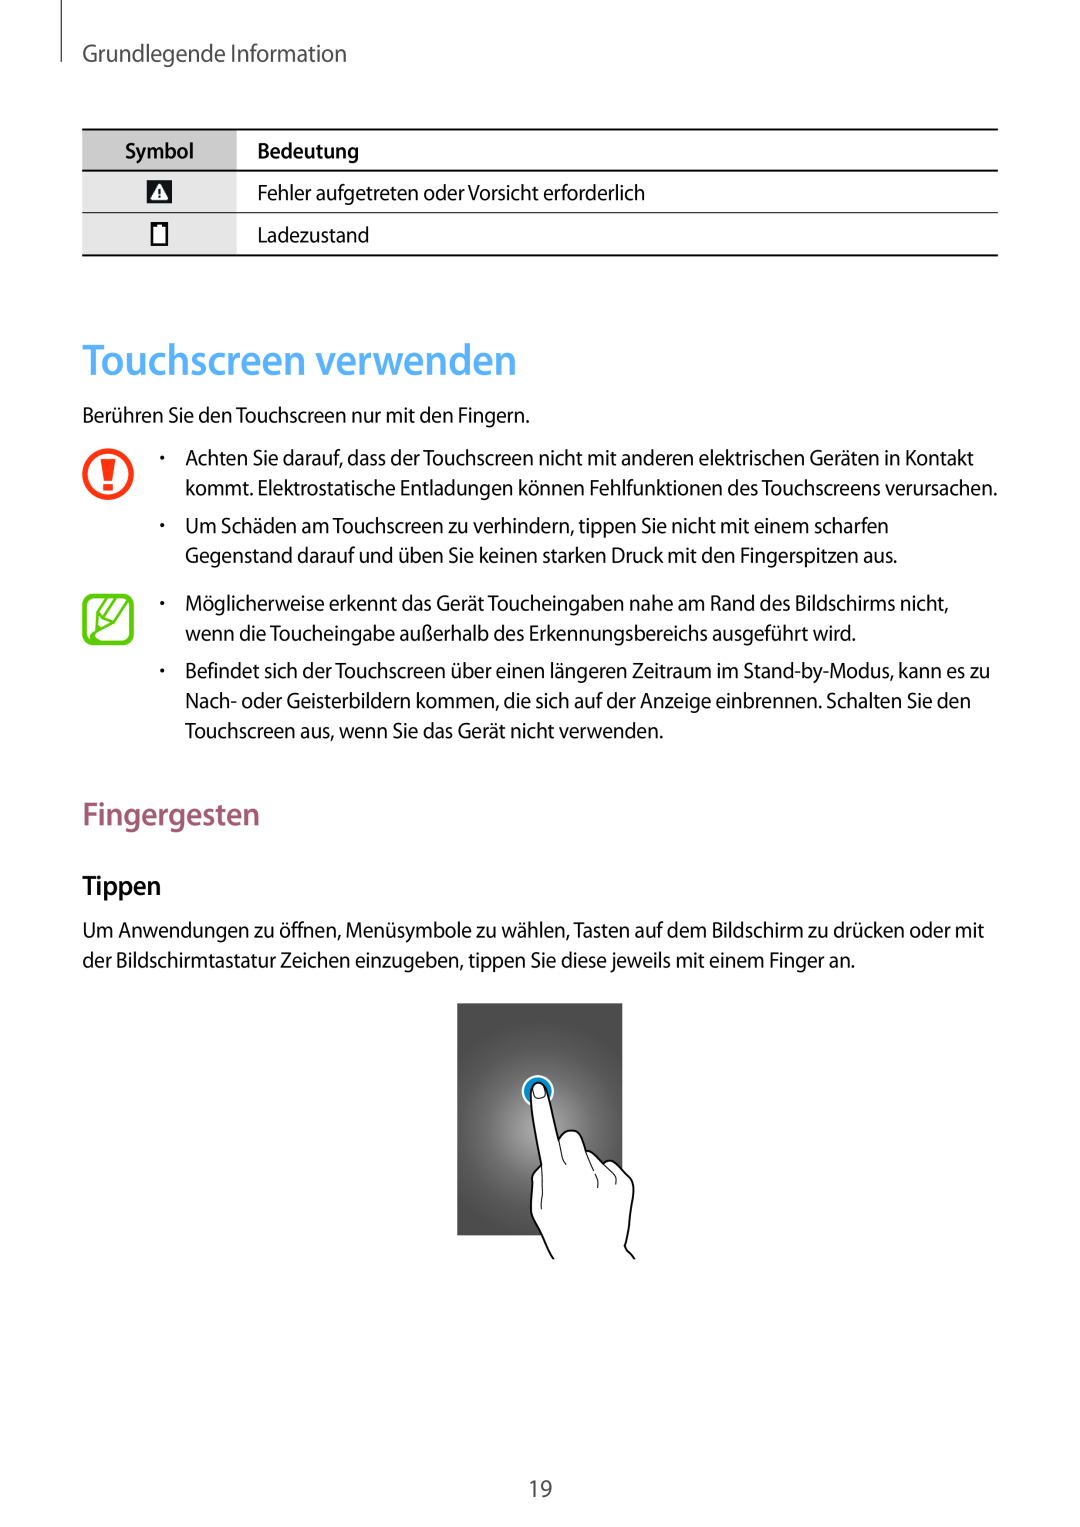 Samsung SM-T3150ZWABOG manual Touchscreen verwenden, Fingergesten, Tippen, Grundlegende Information, Symbol Bedeutung 